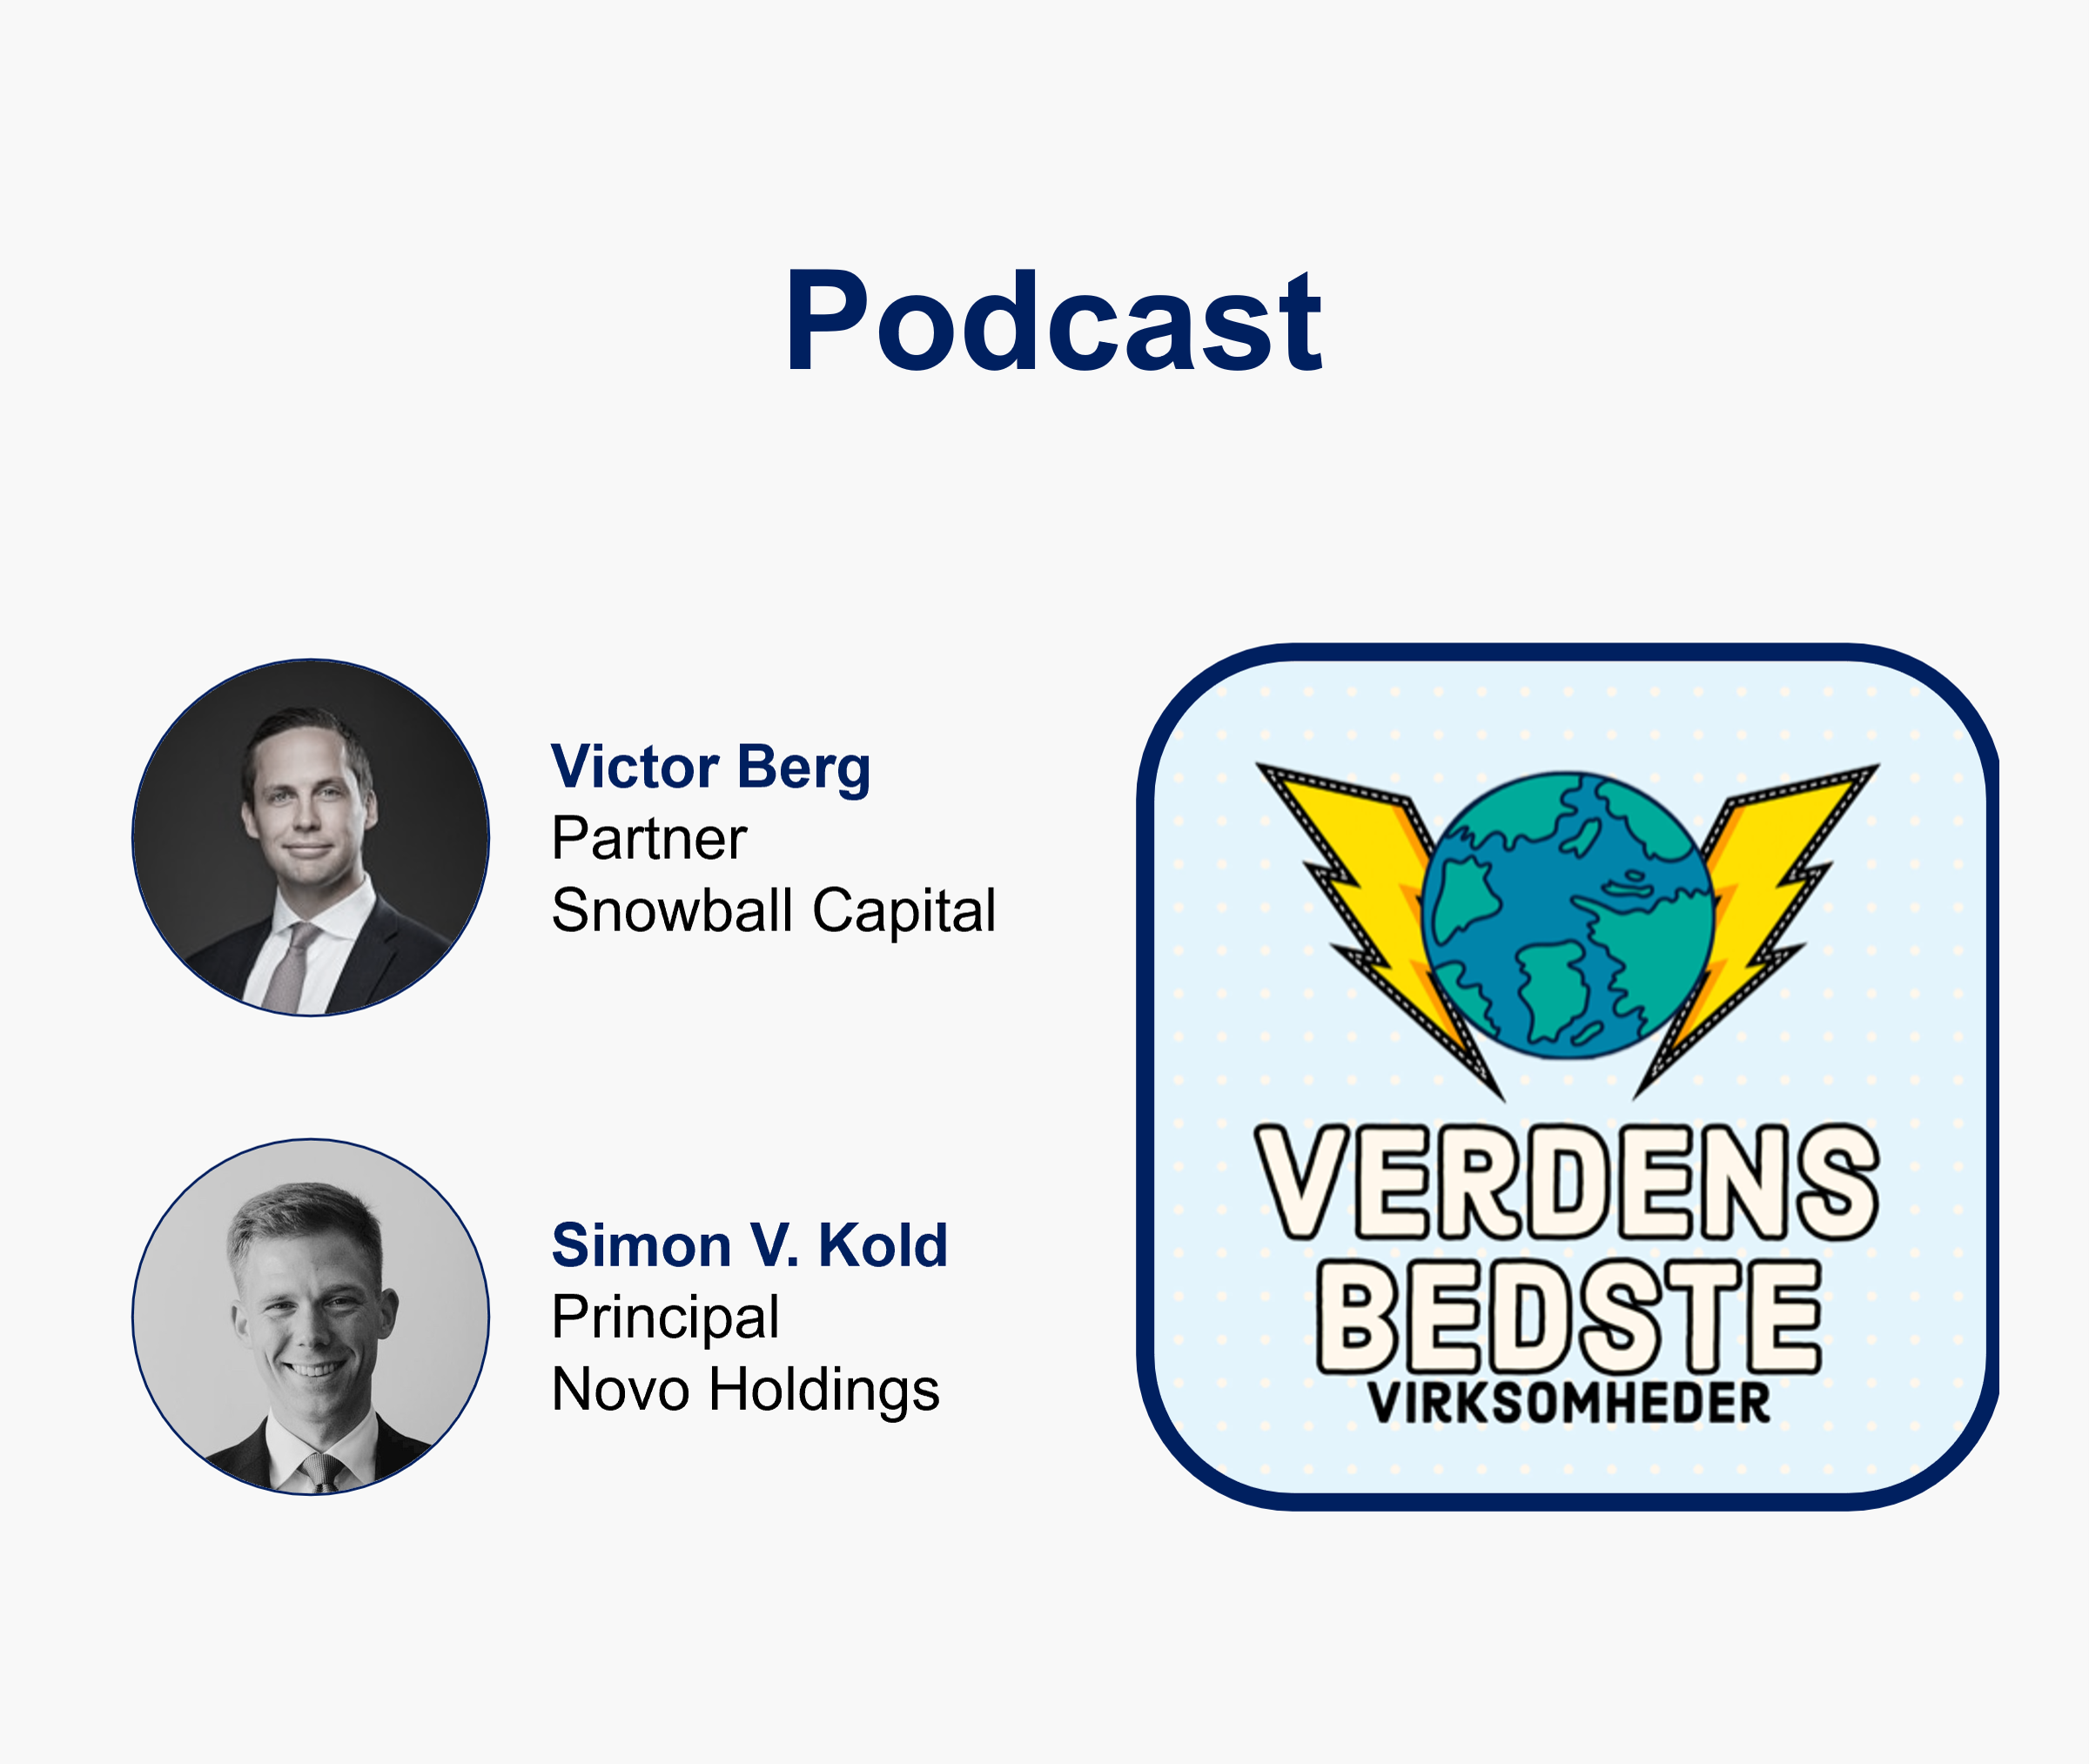 Podcast ep. 2 – Verdens Bedste Virksomheder: Meta Platforms